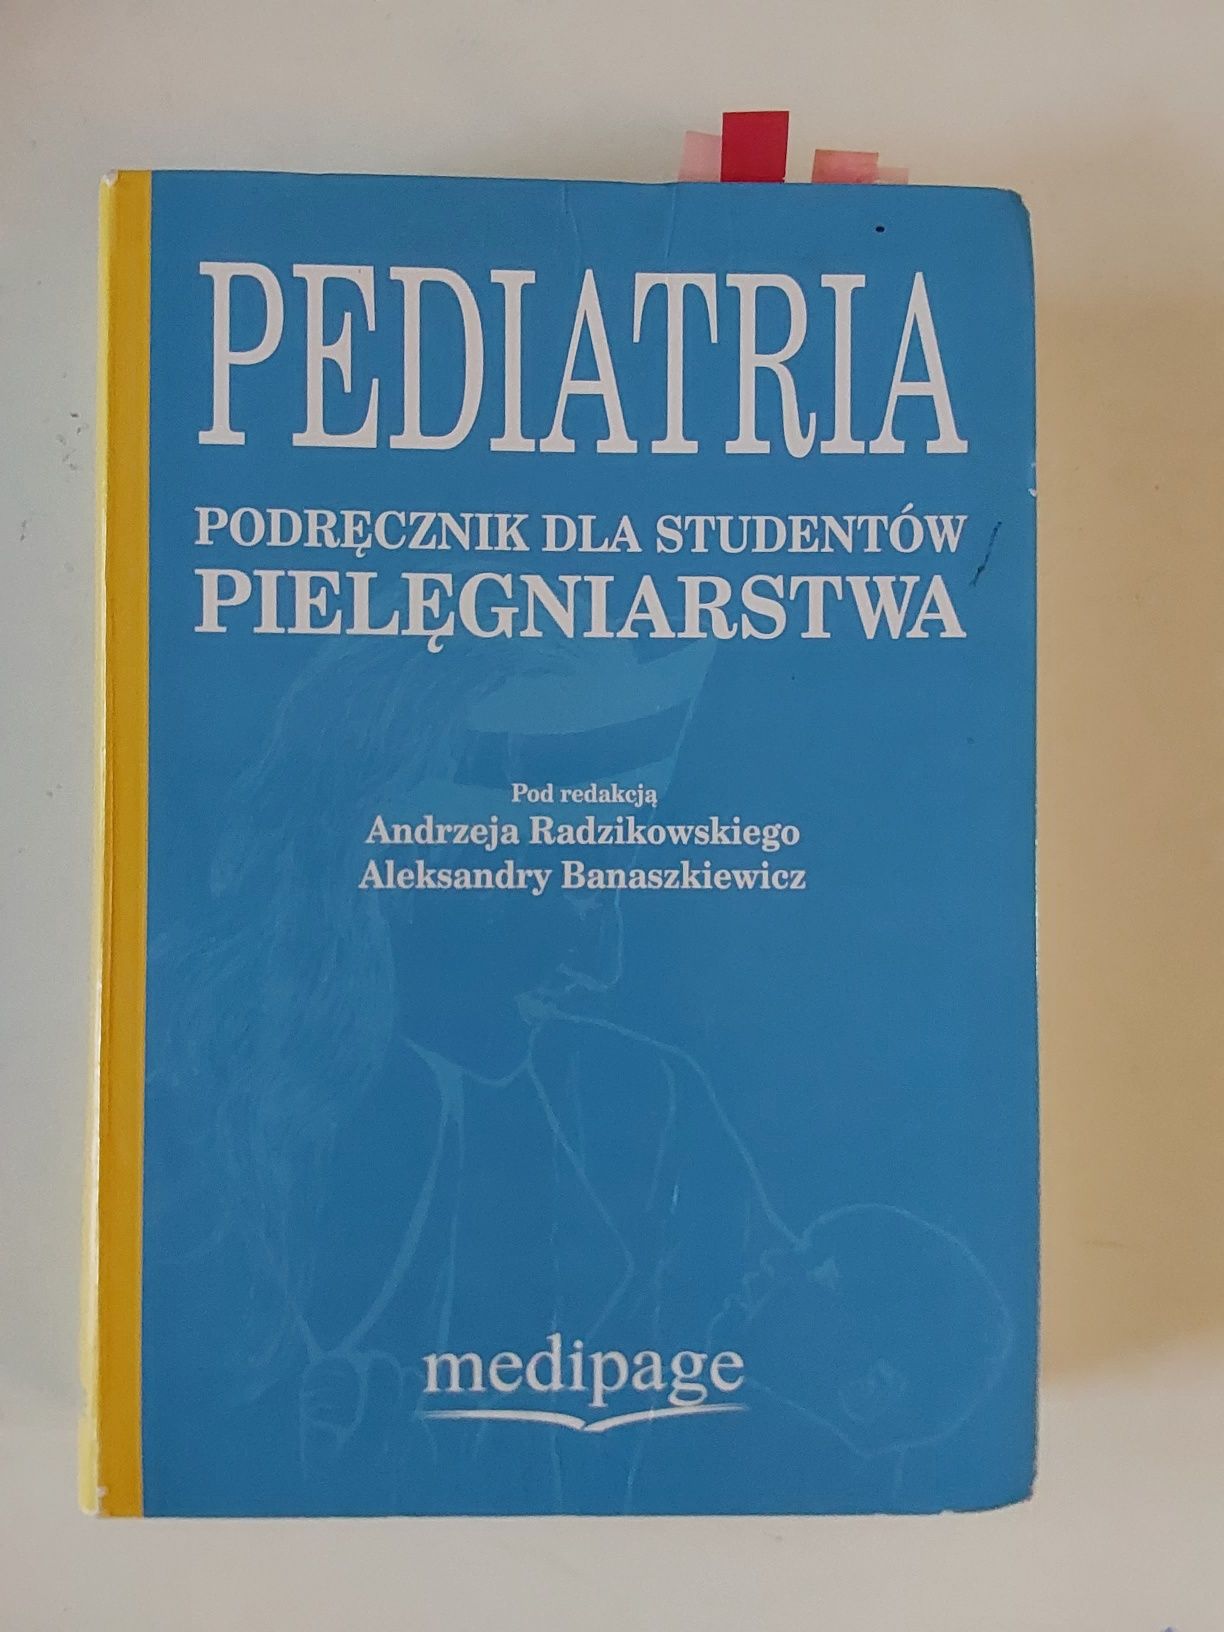 PEDIATRIA Podręcznik dla studentów pielęgniarstwa